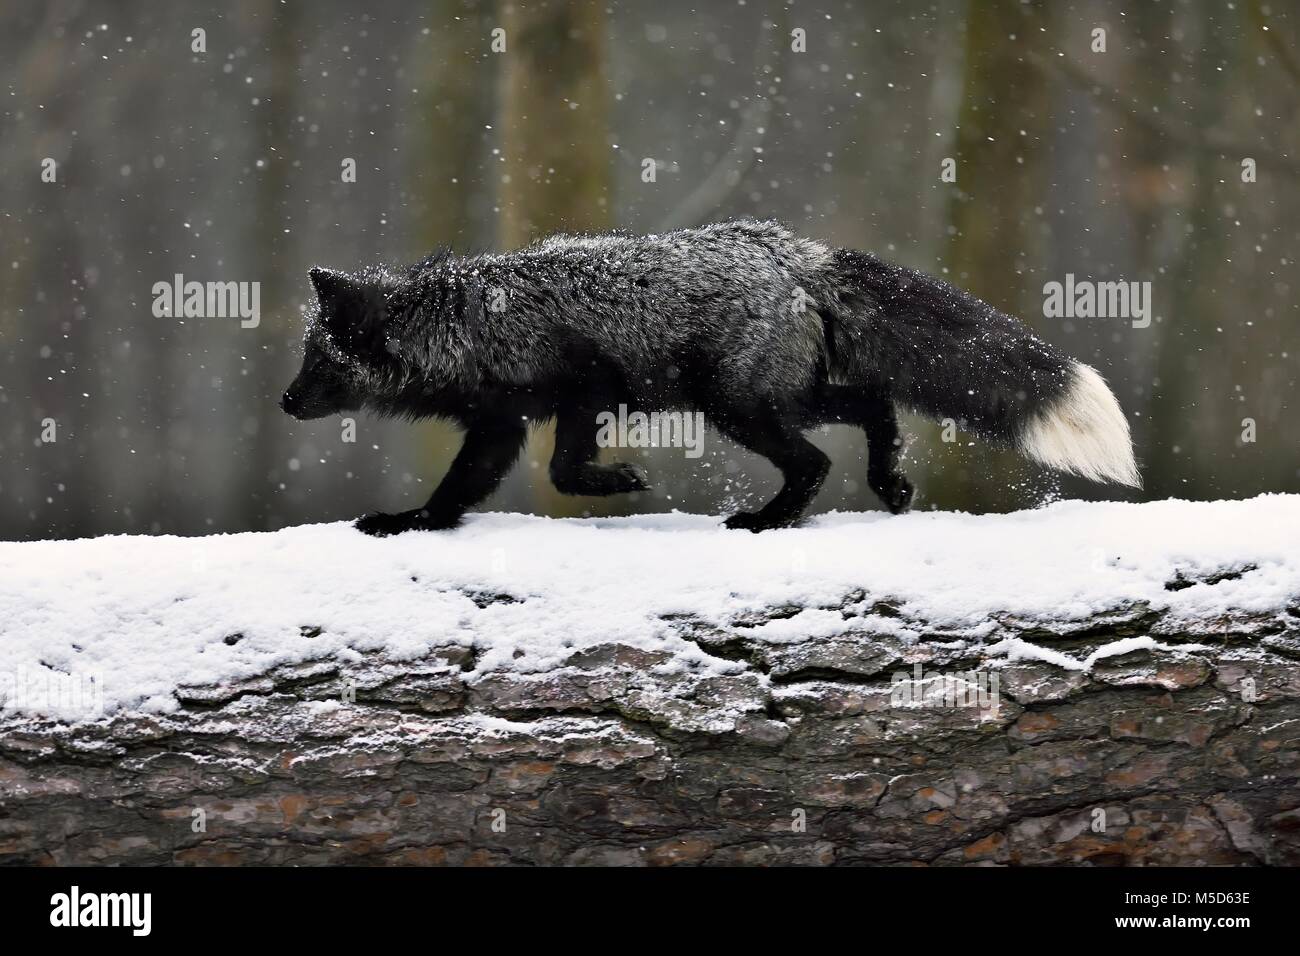 Silver fox, scuro-nero, variazione di colore del Red Fox (Vulpes vulpes vulpes), scorre su un tronco di albero in nevicata, captive Foto Stock